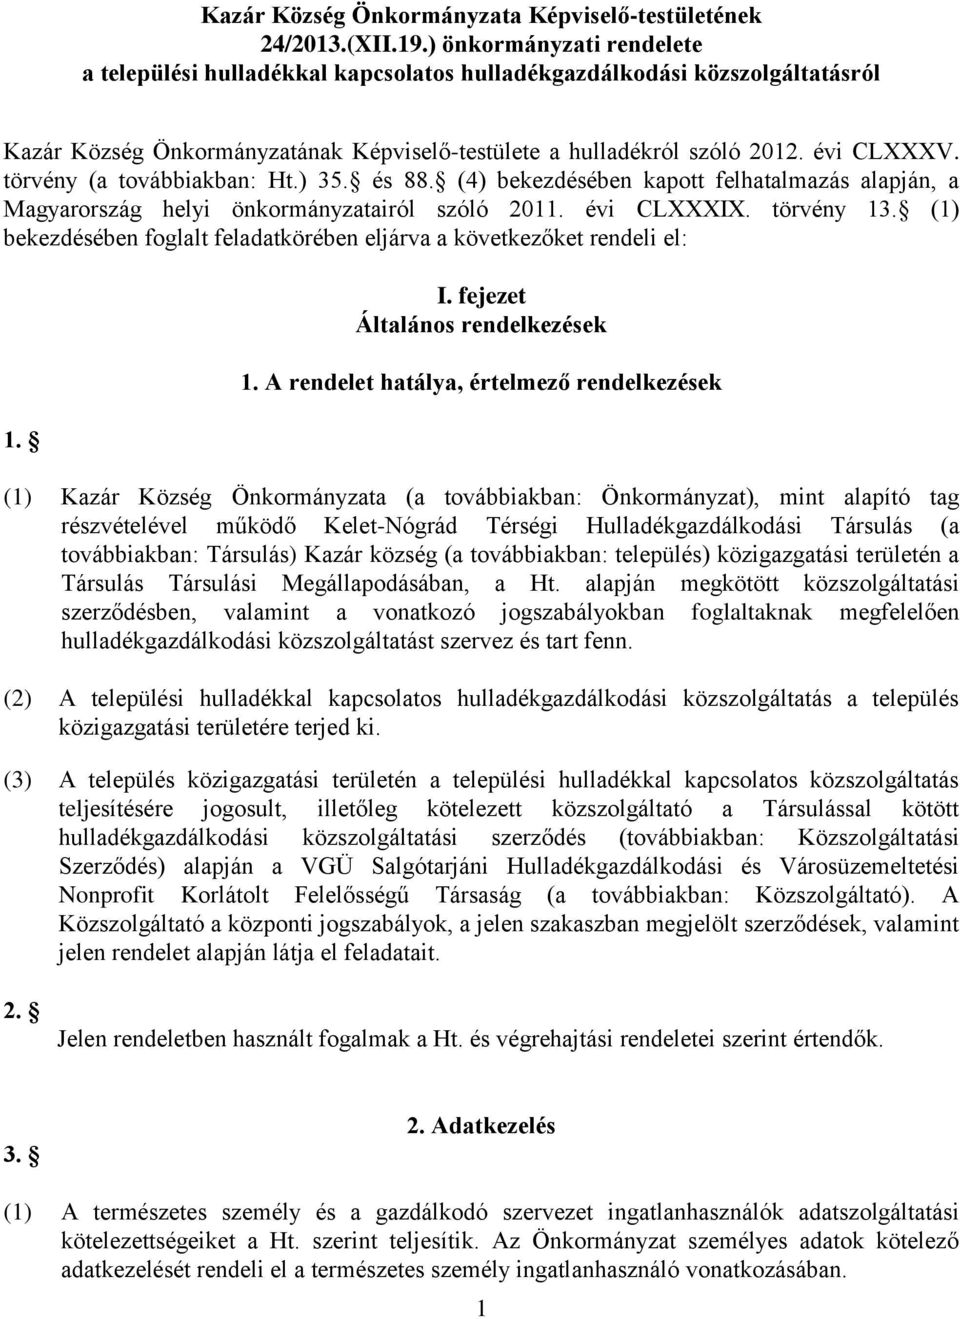 törvény (a továbbiakban: Ht.) 35. és 88. (4) bekezdésében kapott felhatalmazás alapján, a Magyarország helyi önkormányzatairól szóló 2011. évi CLXXXIX. törvény 13.